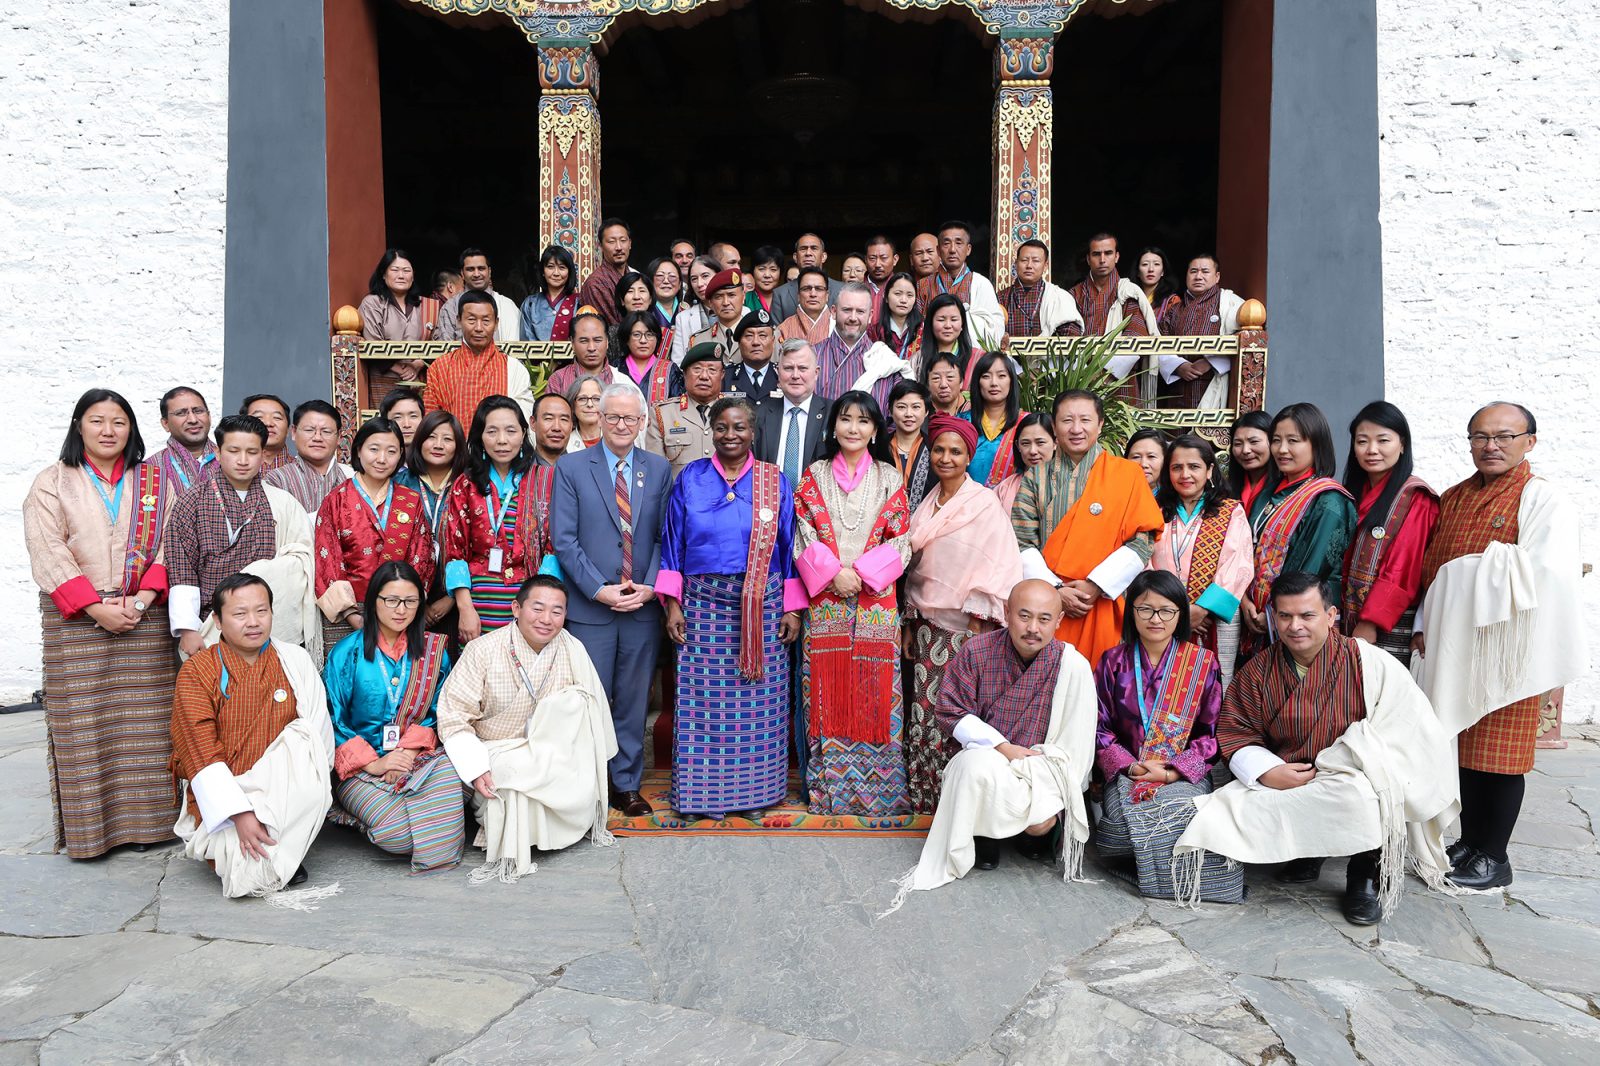 bhutan social and cultural contexts